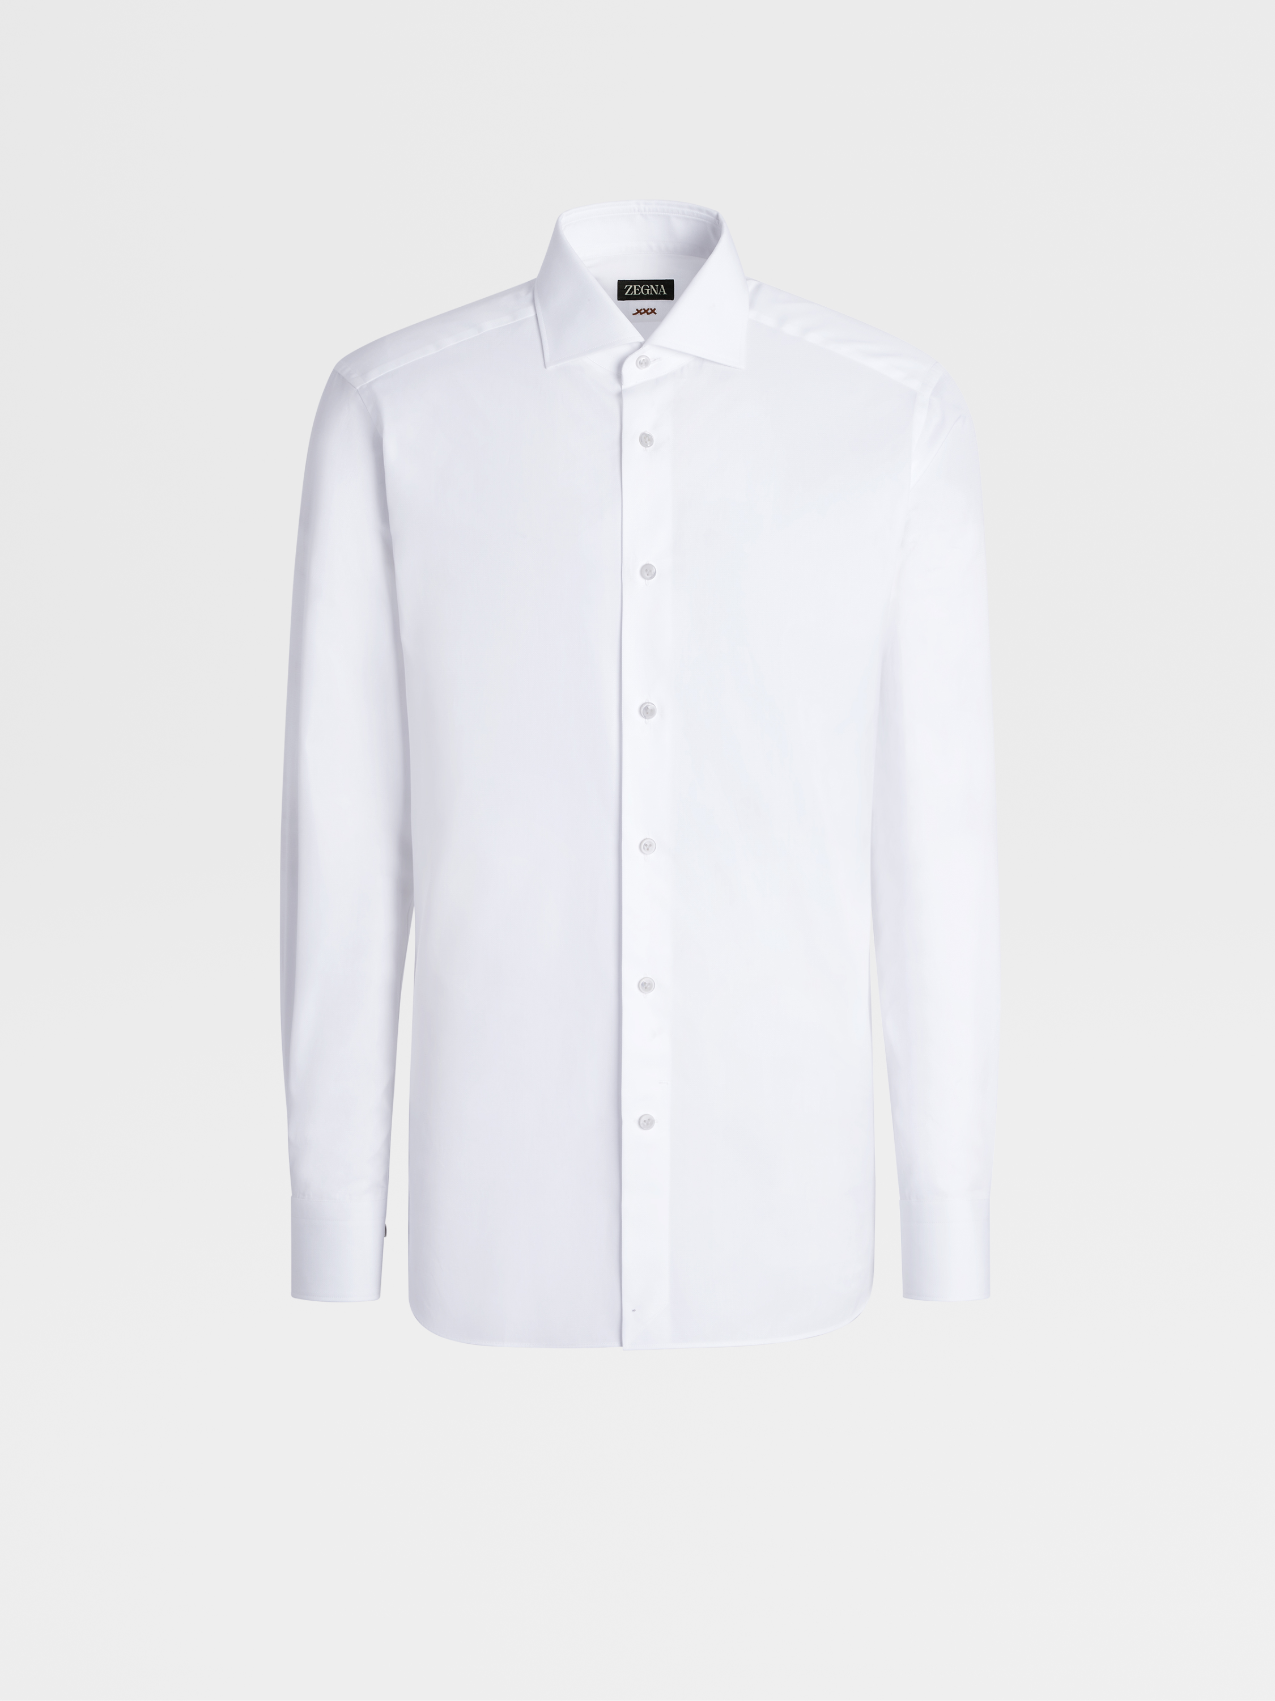 White Micro Herringbone Cotton Long-sleeve Tailoring Shirt